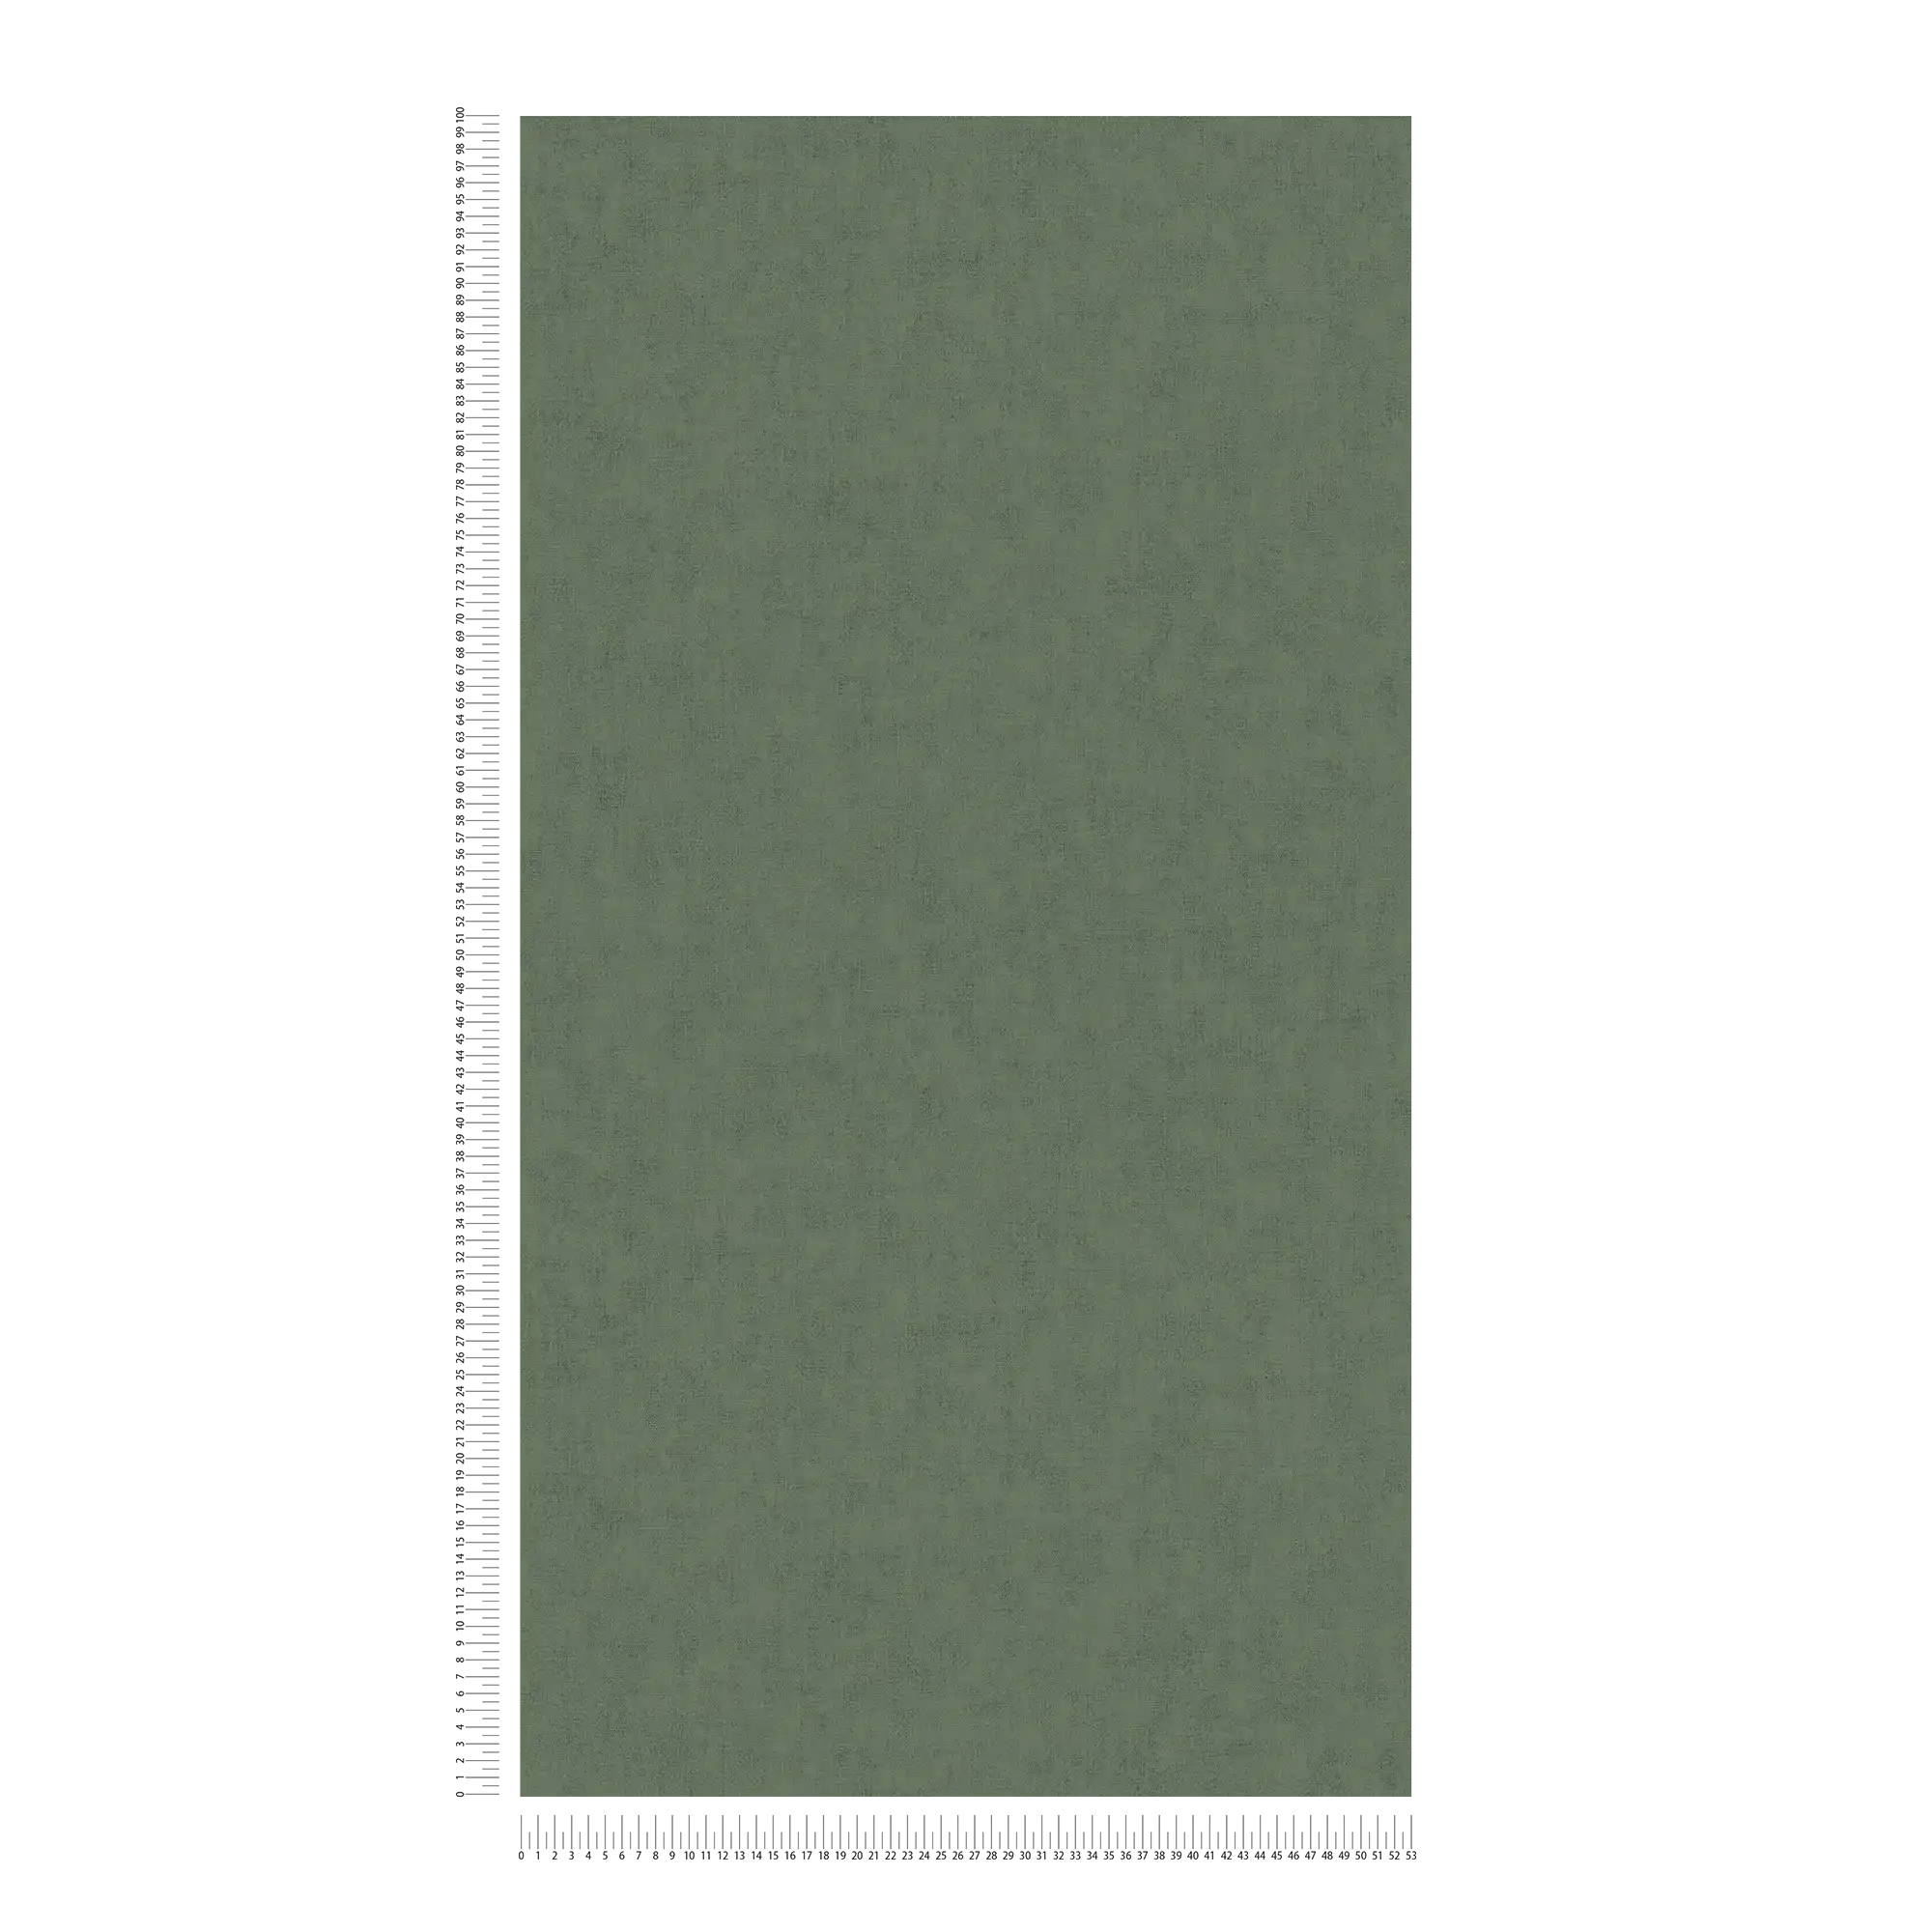             Carta da parati in tessuto non tessuto in stile scandinavo - grigio, marrone
        